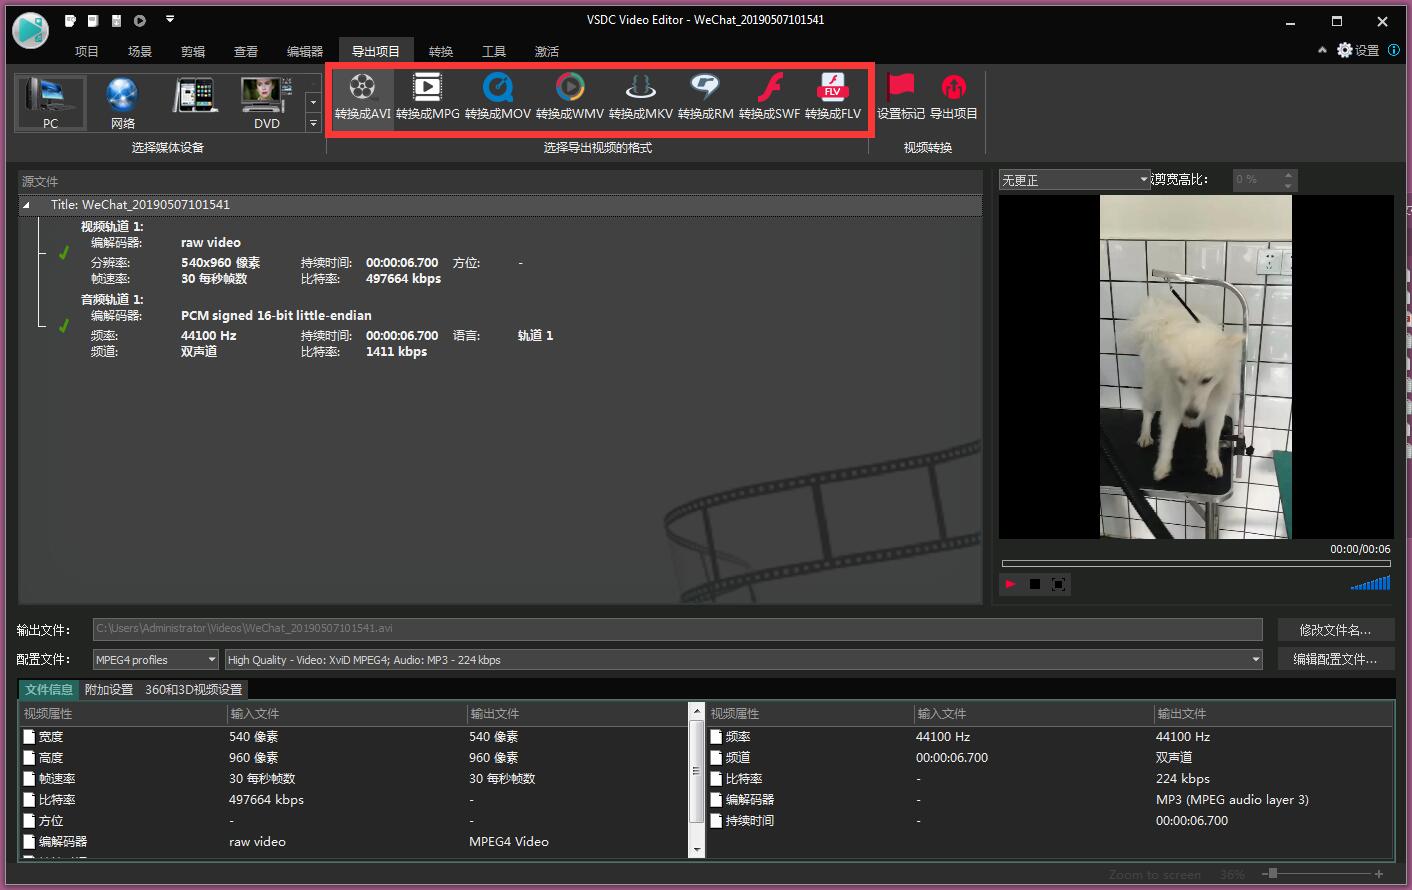 VSDC Video Editor Pro 8.2.3.477 downloading